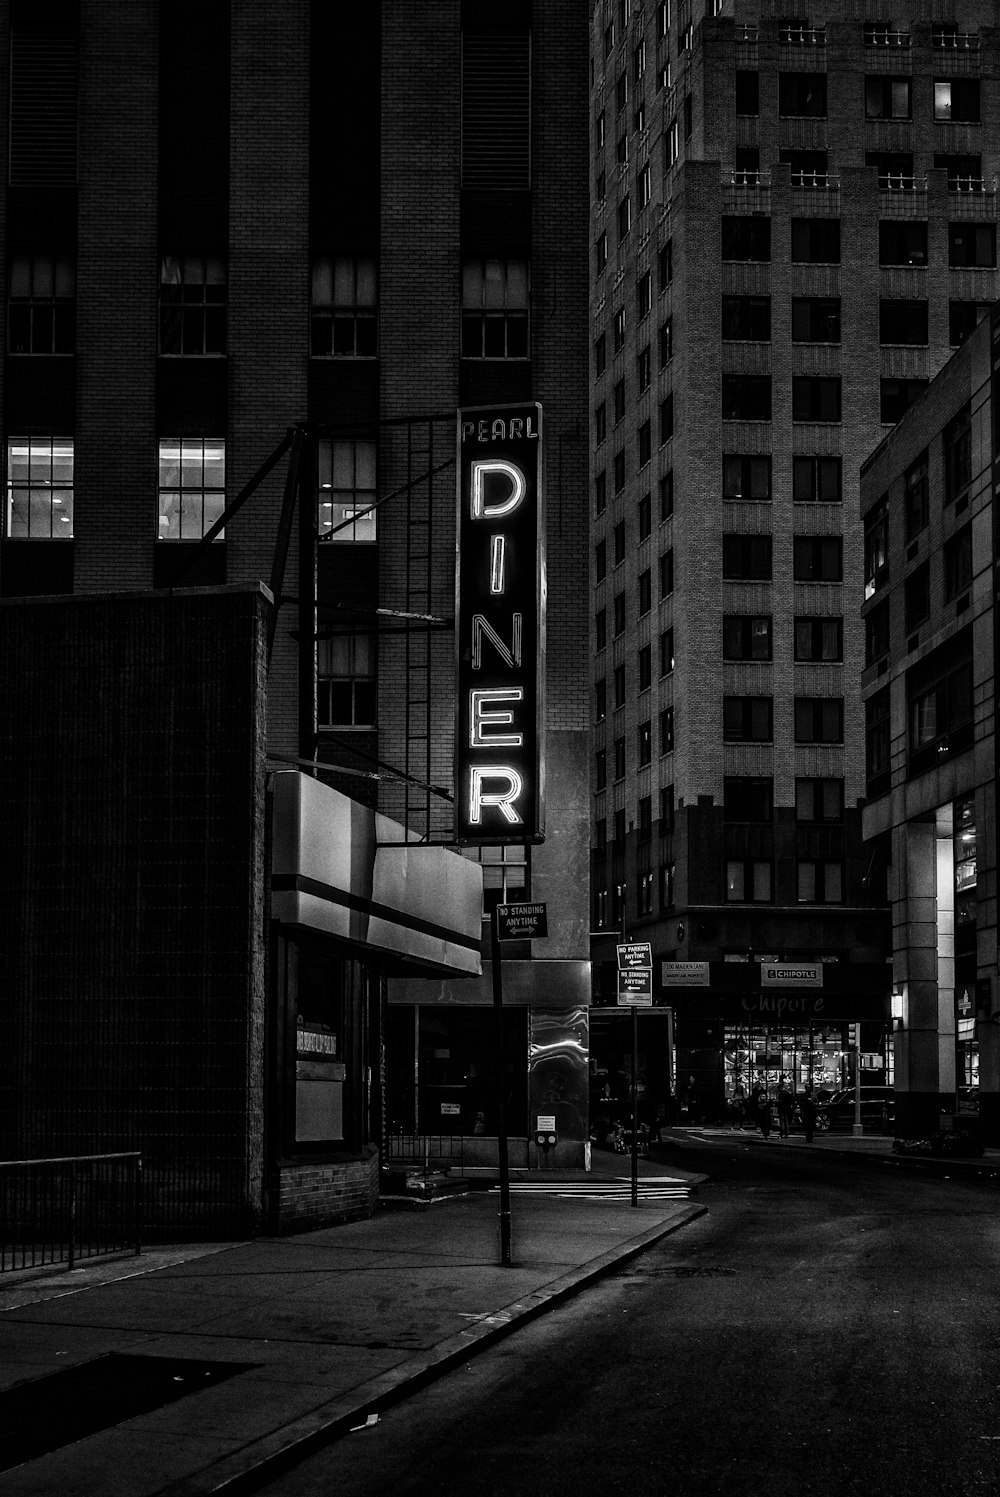 Foto en escala de grises del letrero de Pearl Diner en la ciudad